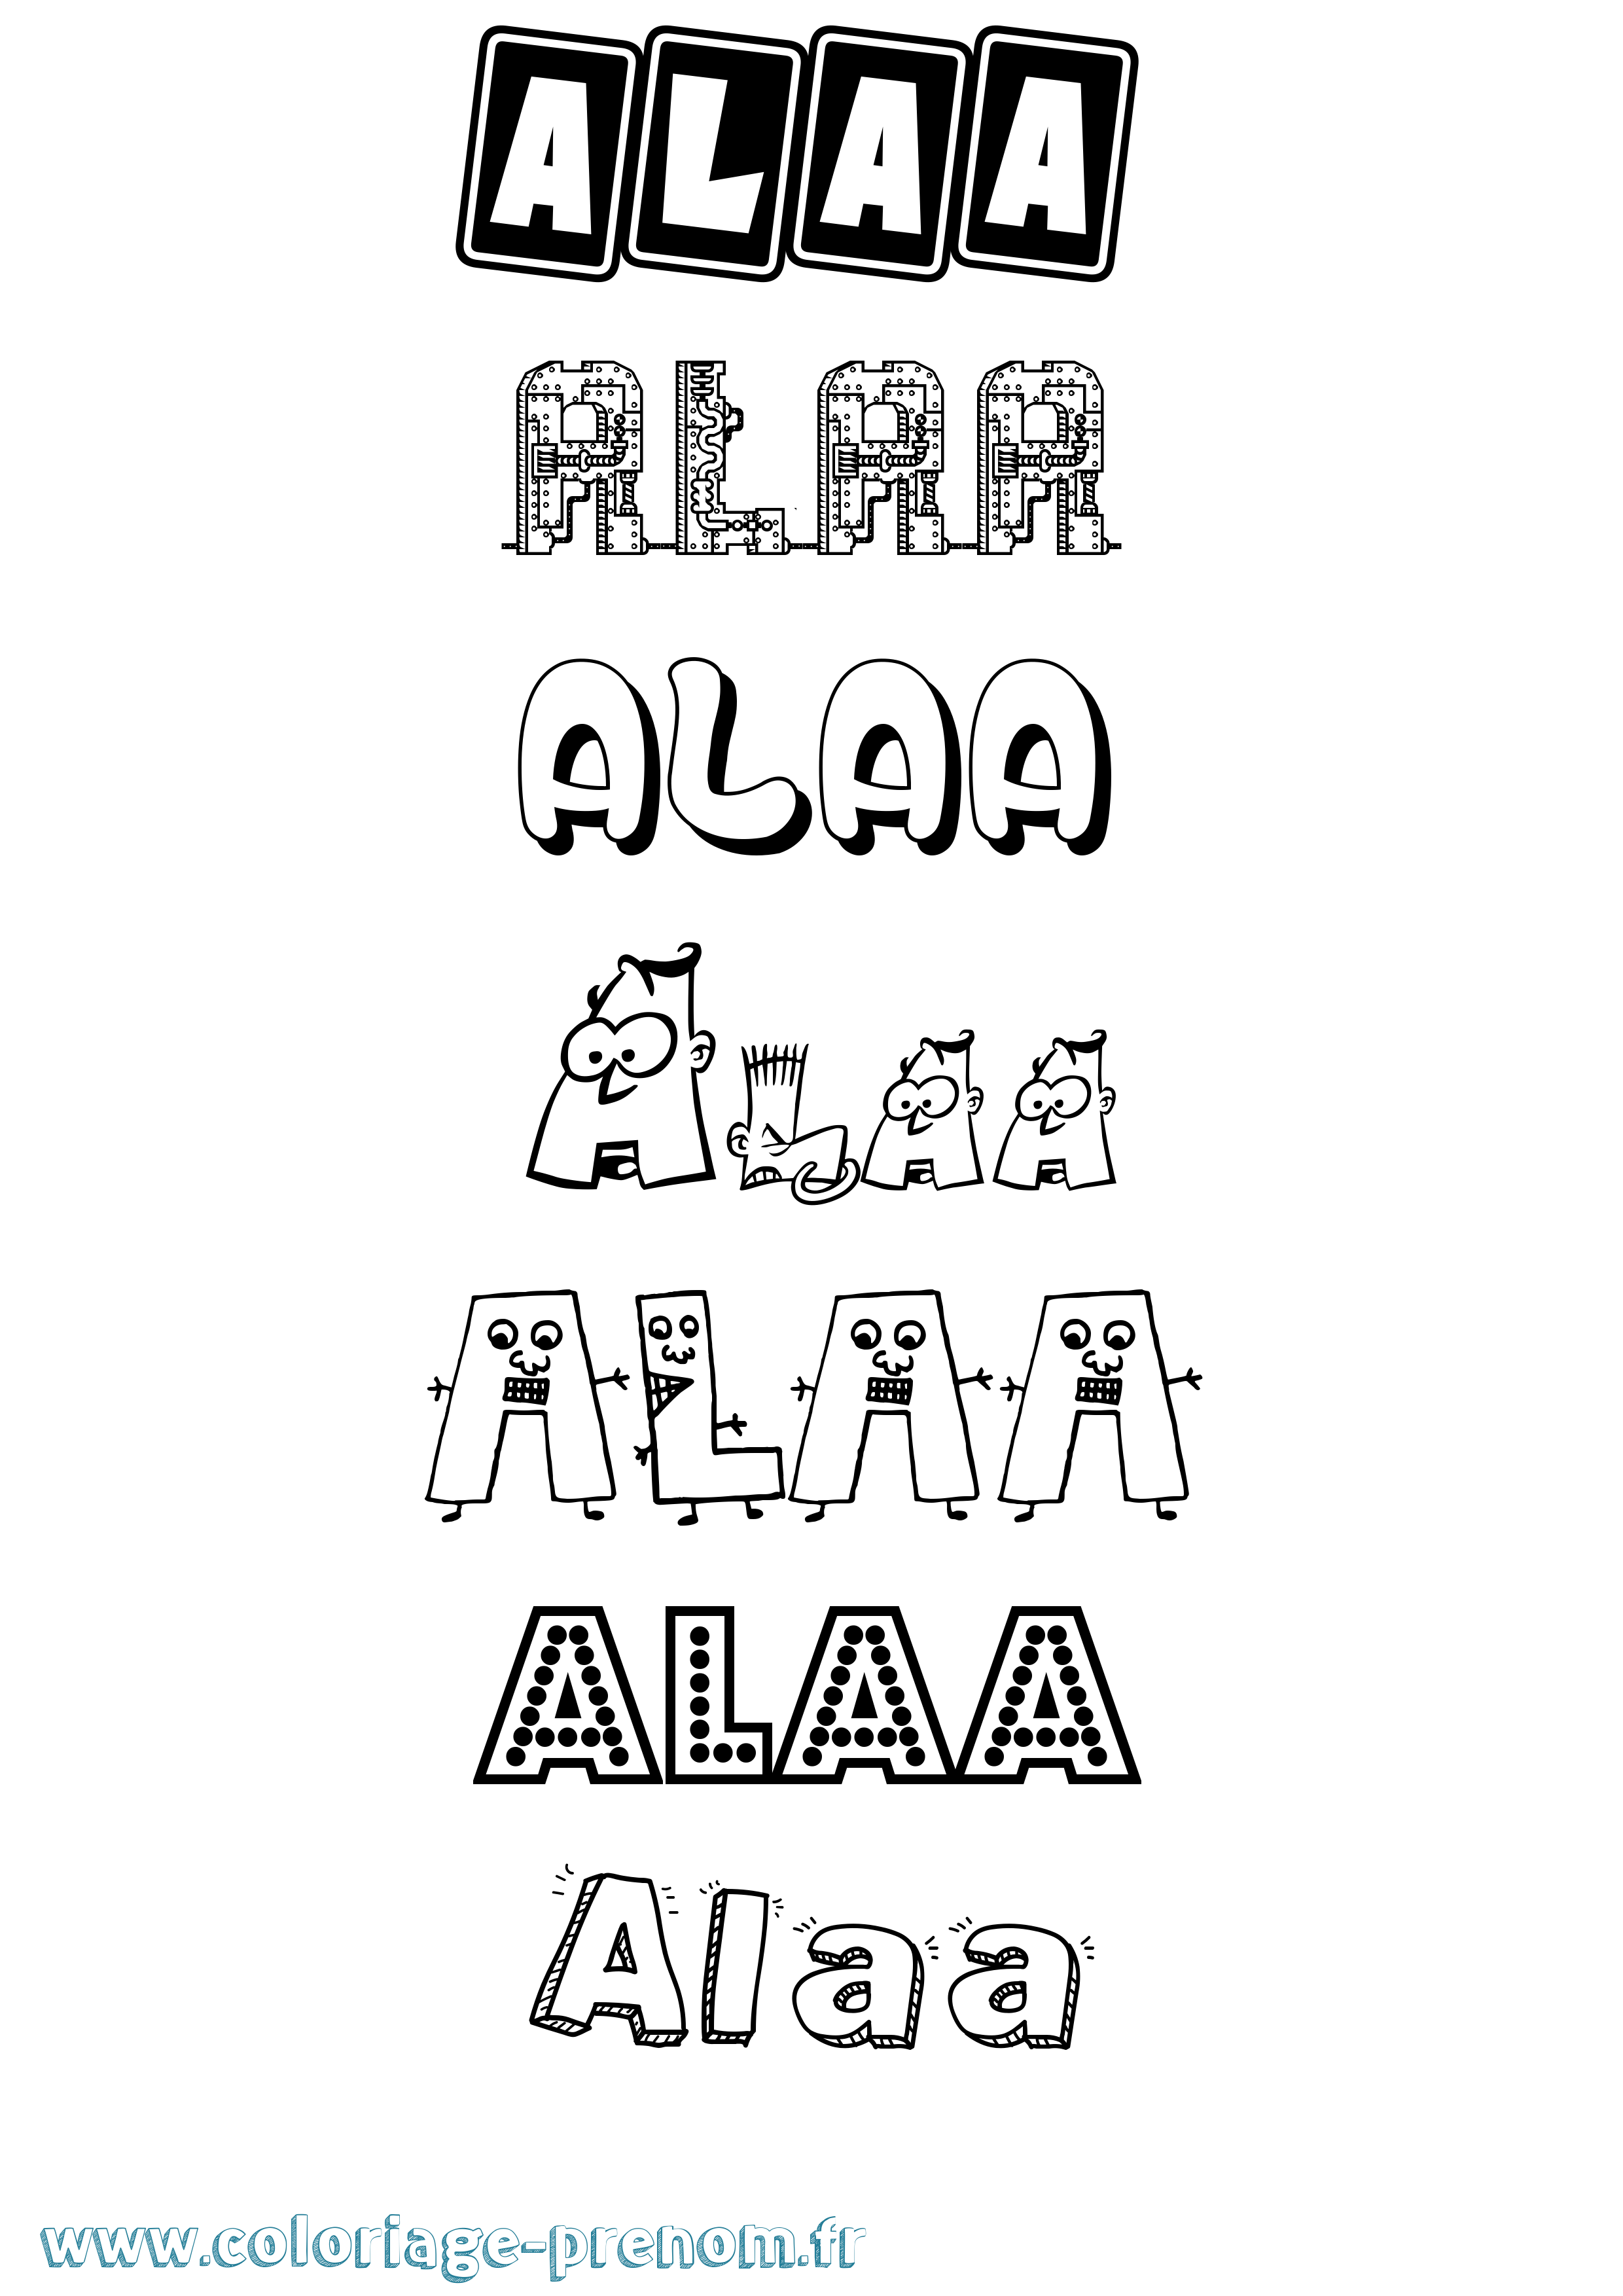 Coloriage prénom Alaa Fun